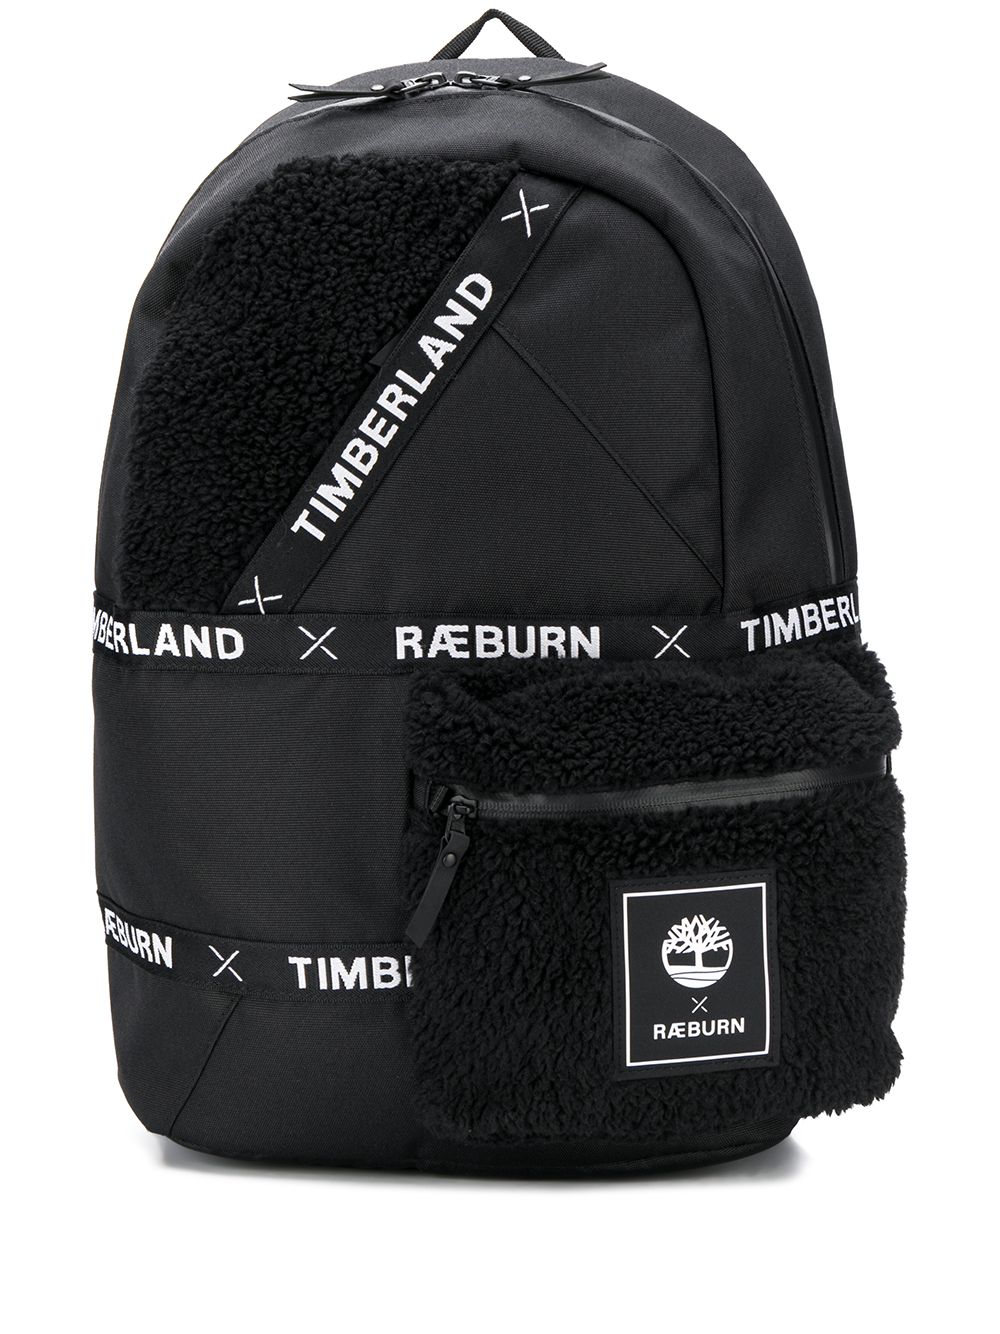 фото Timberland рюкзак с логотипом из коллаборации с Raeburn